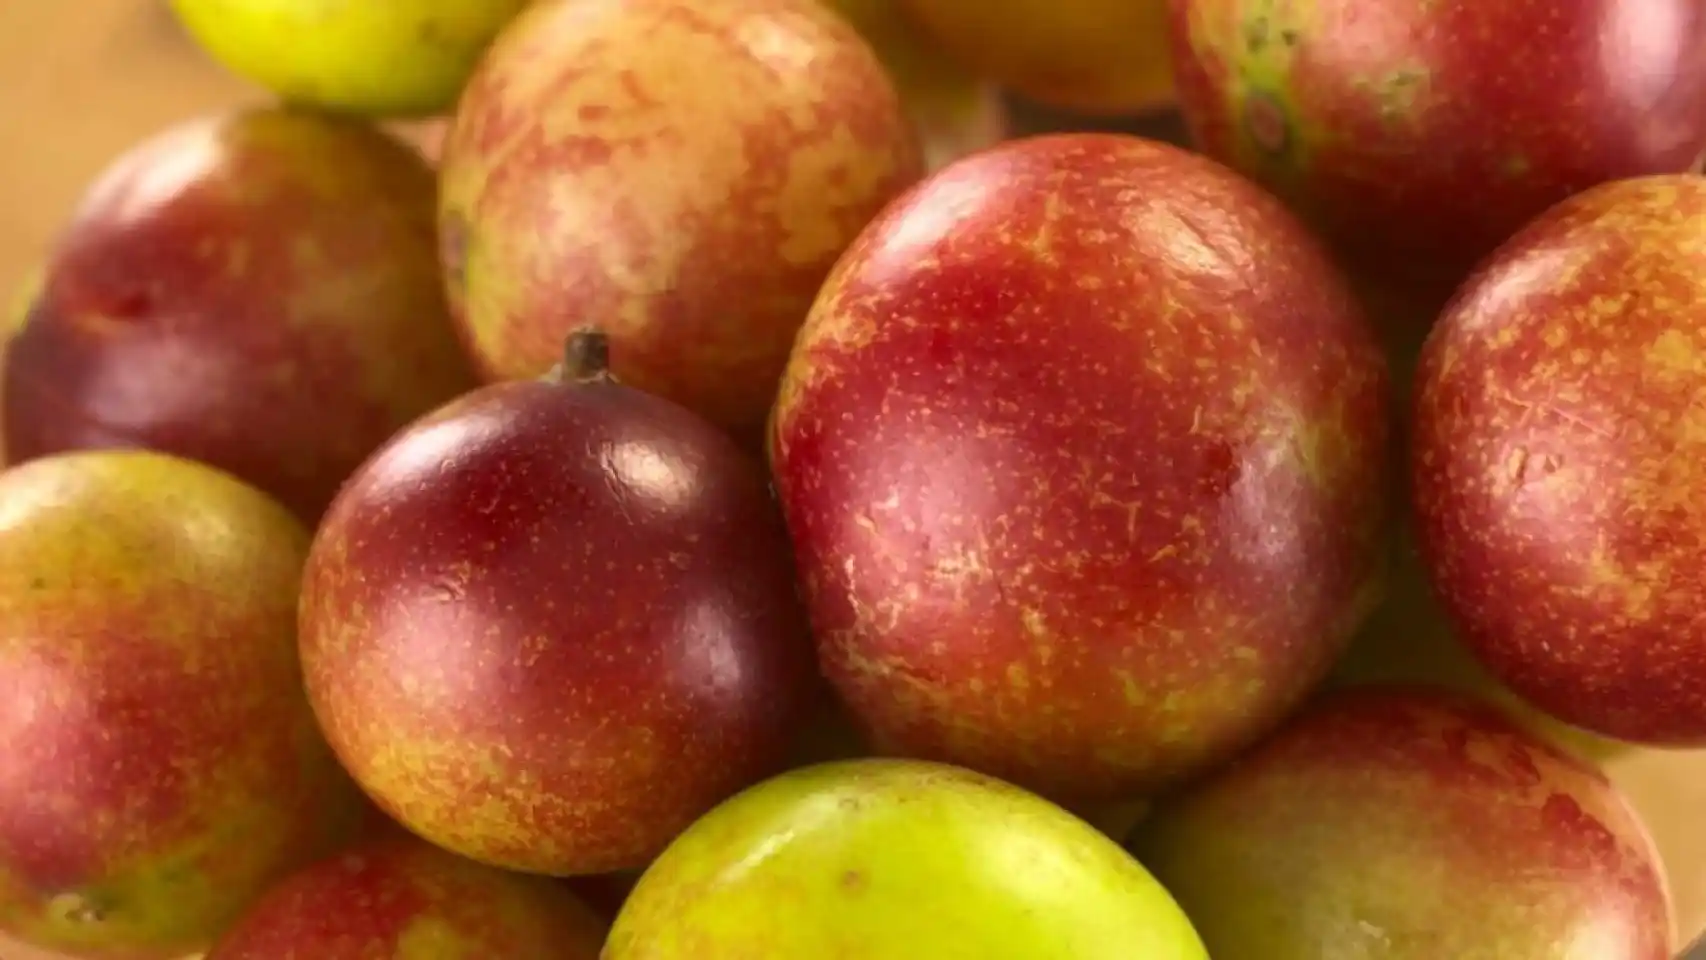 Fruto camu camu ayuda a prevenir enfermedades degenerativas